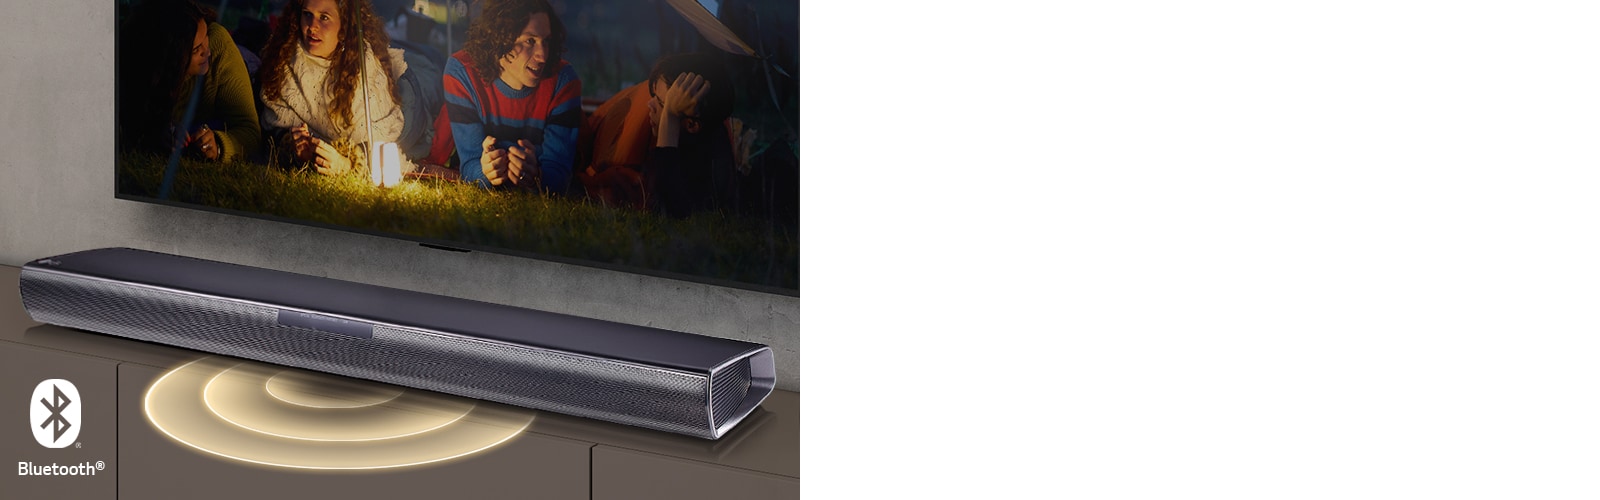 LG TV-en henger på veggen. På skjermen vises to par som ligger i gresset. Foran dem står det en lampe. LG-lydplanken står under LG TV-en. Det kommer lyd-grafikk ut fra fronten av lydplanken. Bluetooth-logoen vises nederst i høyre hjørne av bildet.